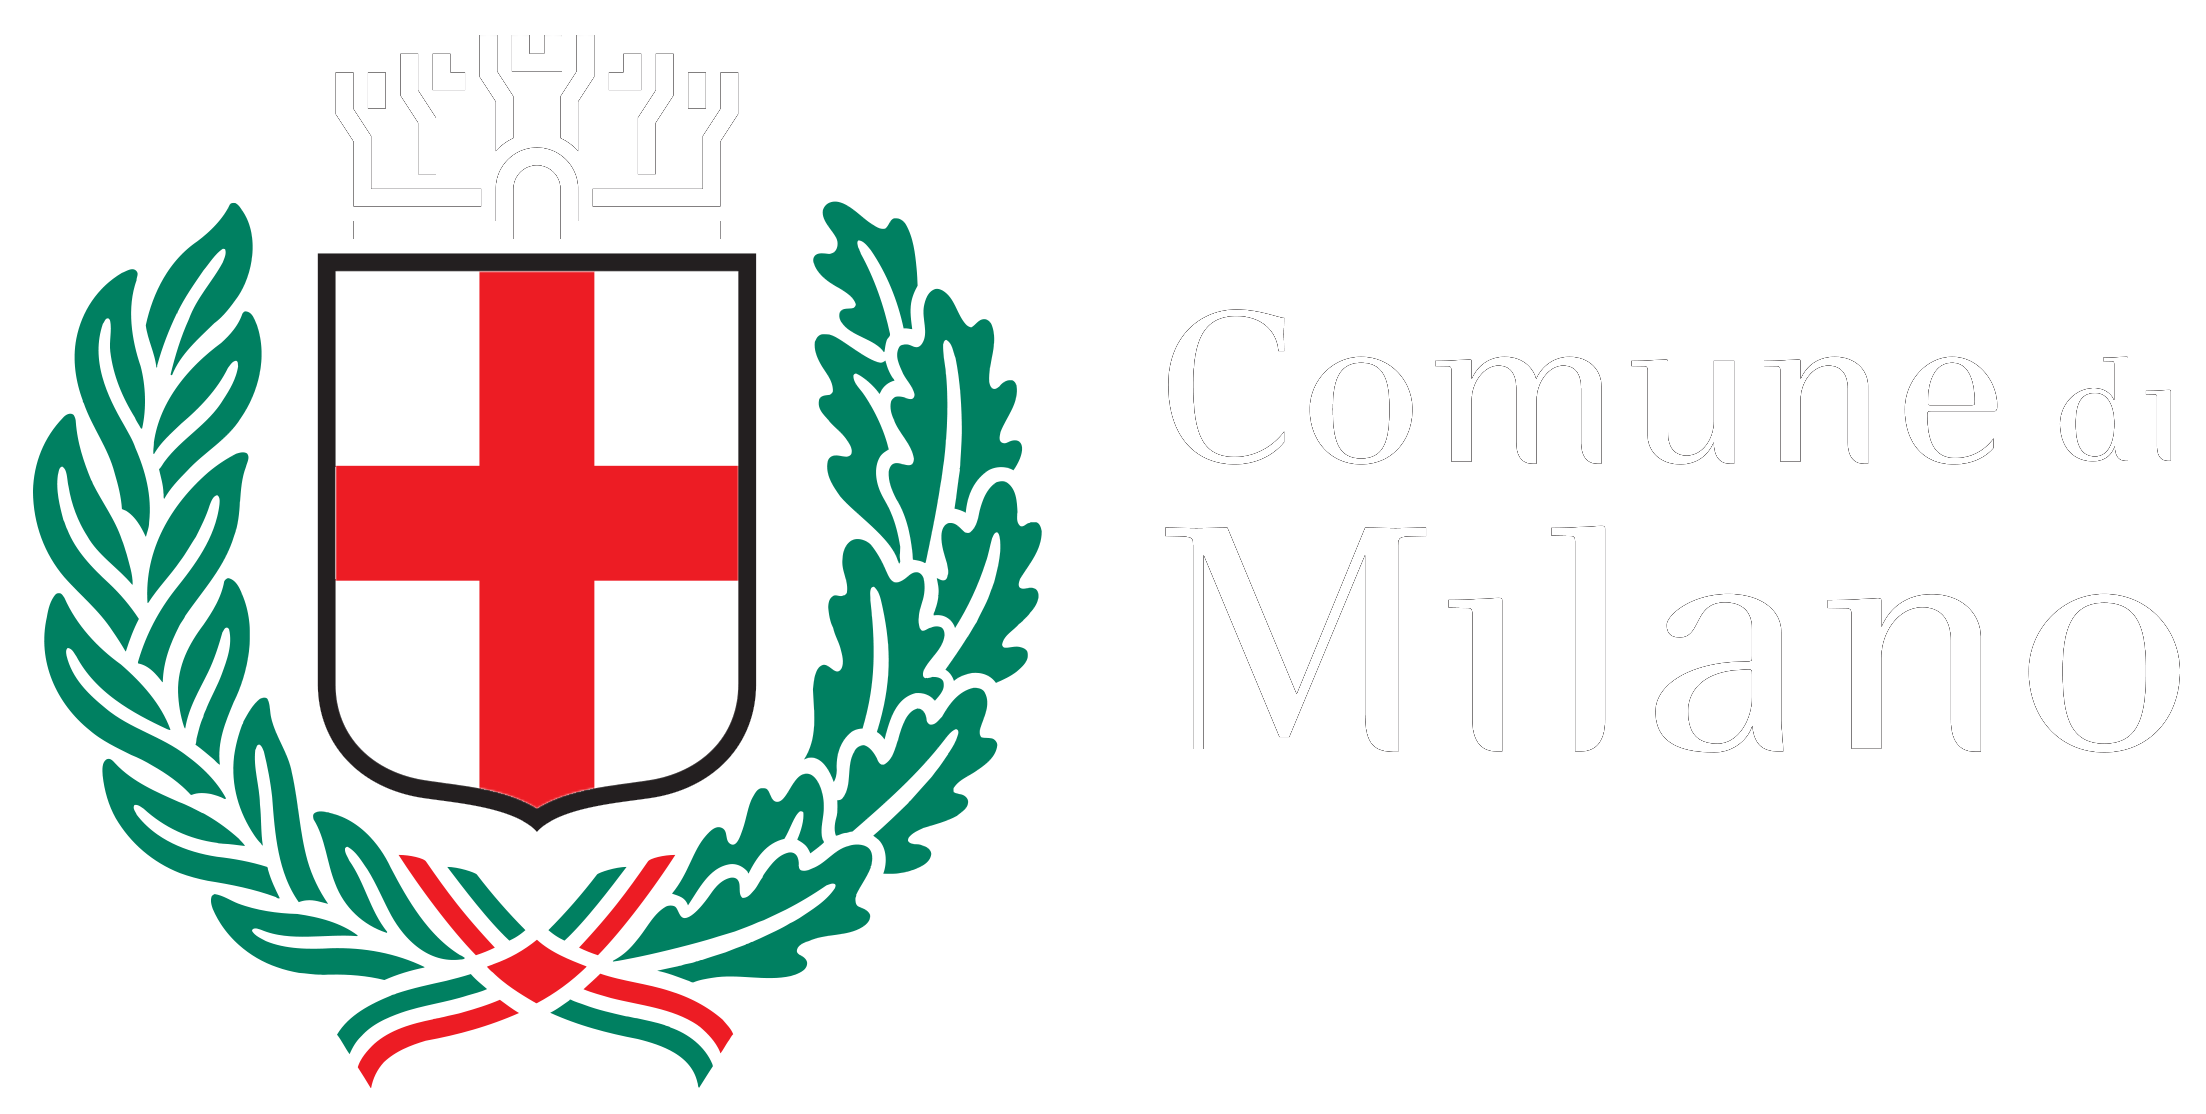 Logo del Comune di Milano